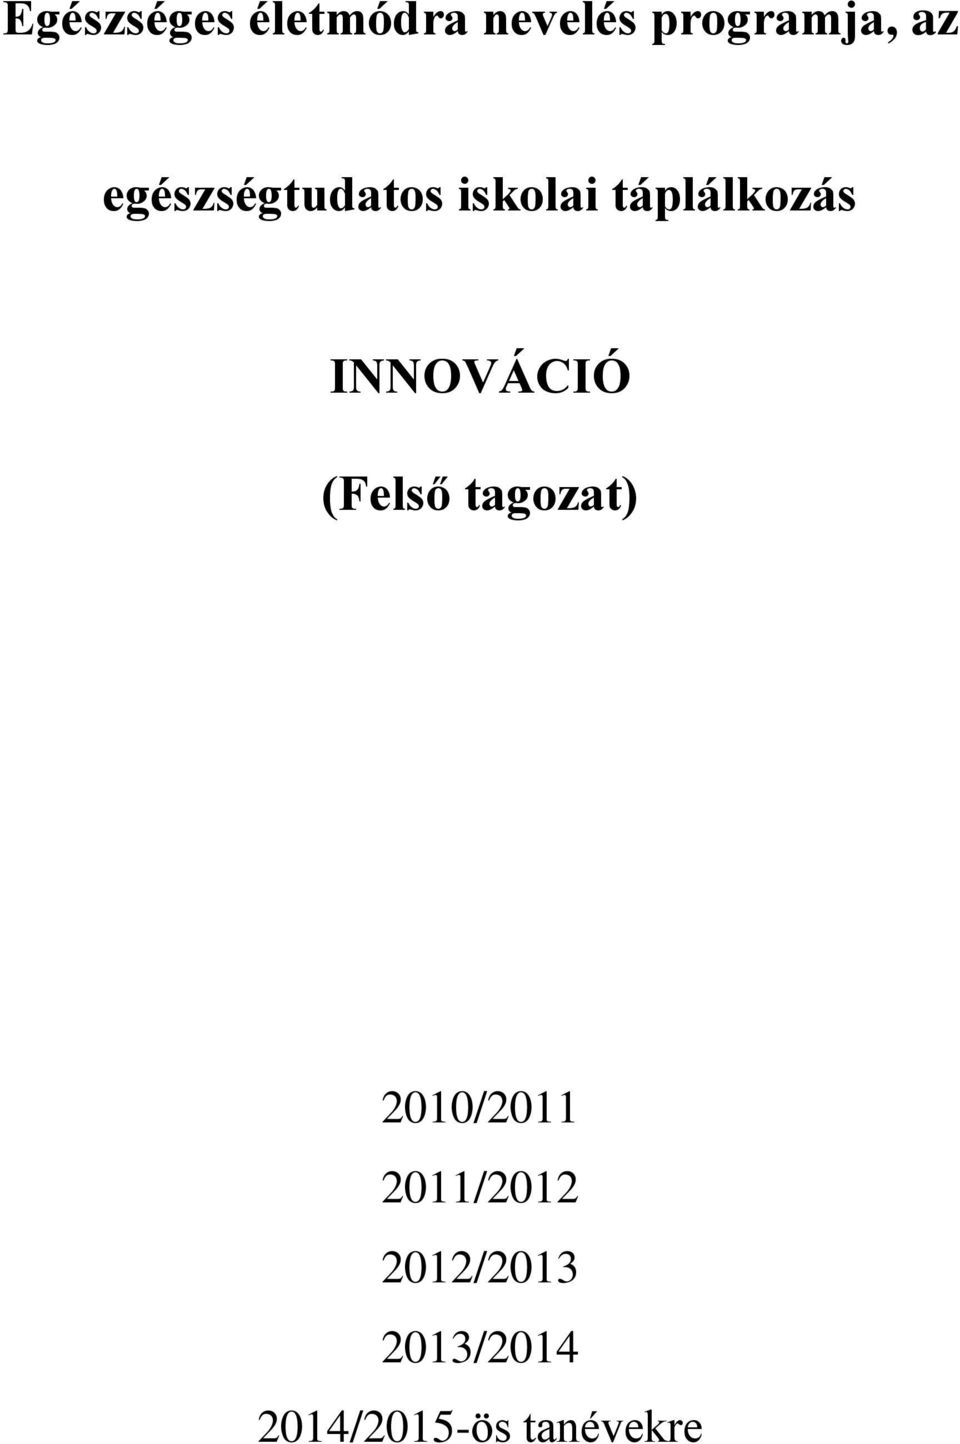 INNOVÁCIÓ (Felső tagozat) 2010/2011